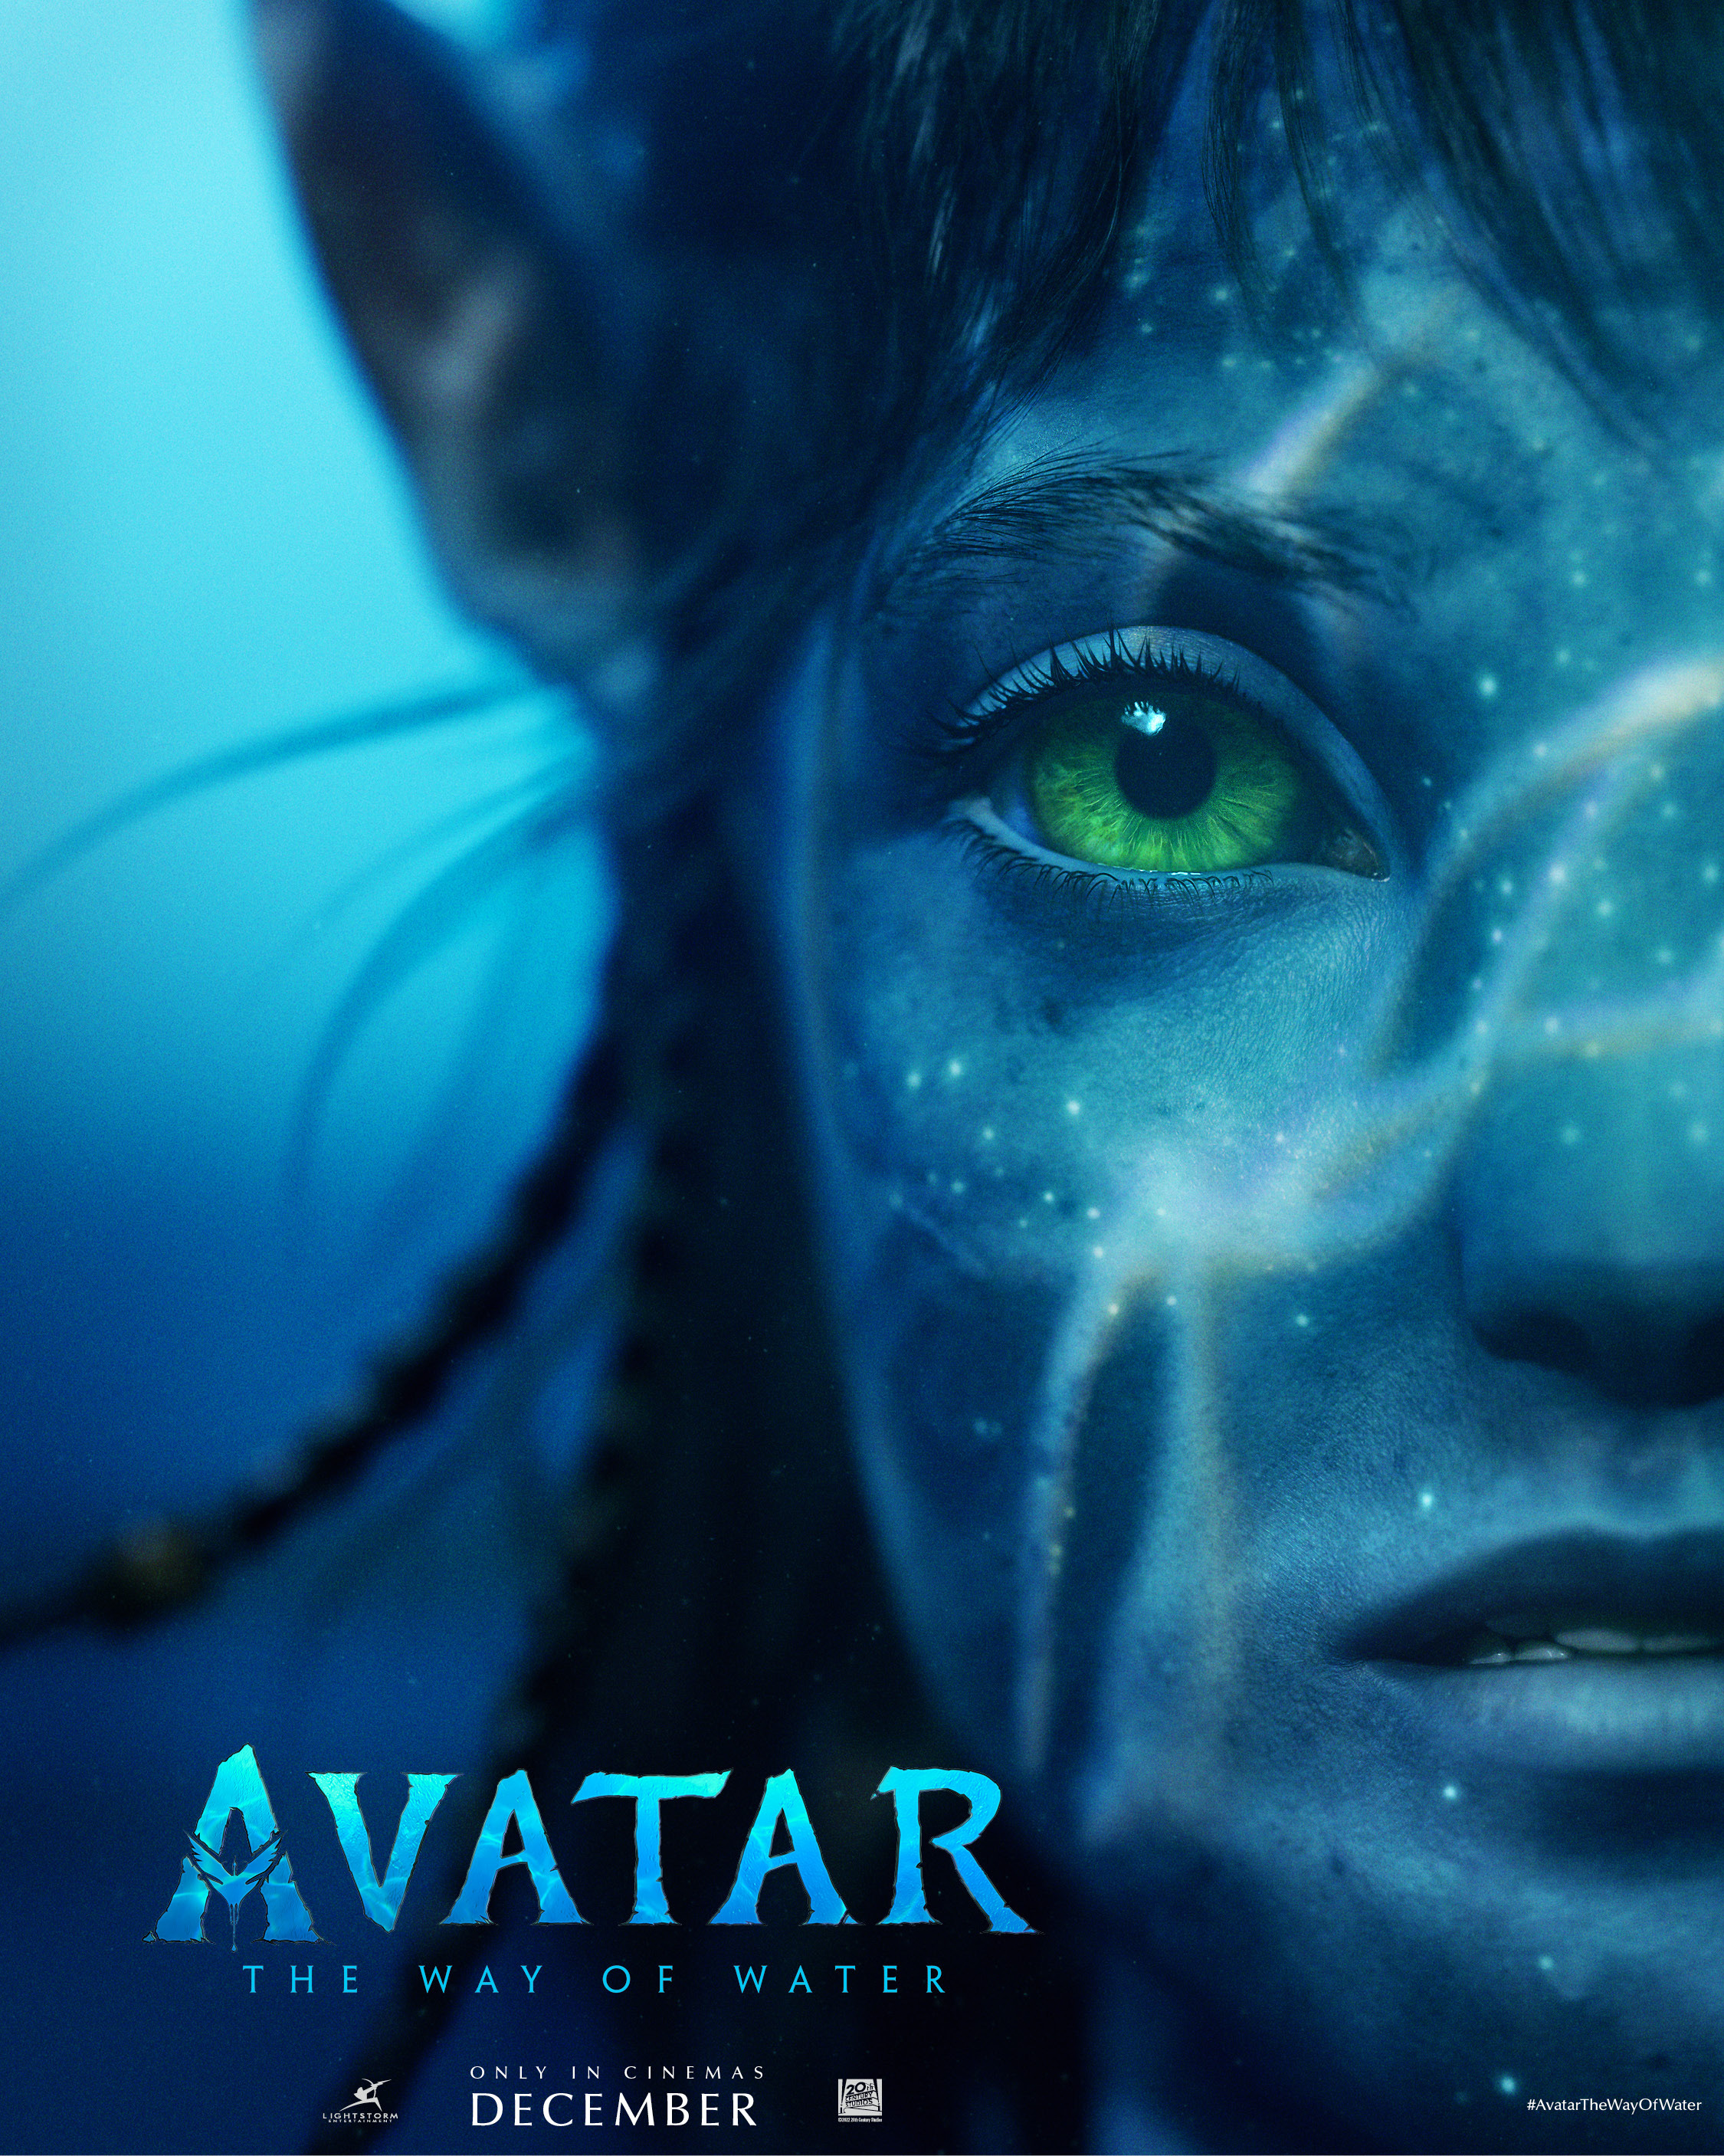 Thế giới mới của Avatar 2: 
Được sản xuất với công nghệ tiên tiến nhất, Avatar 2 mang đến cho khán giả một thế giới mới với một hệ sinh thái đồ sộ, giàu đủ và đa dạng. Từ rừng cây tự nhiên đến những vùng đất bị ô nhiễm, từ những sinh vật kỳ lạ đến những loài động vật đã quen thuộc. Avatar 2 không chỉ đem lại cho chúng ta hình ảnh sống động nhất, mà còn đưa ra thông điệp về tình yêu và sự chăm sóc môi trường. Cùng đón xem bộ phim và đắm chìm trong thế giới mới đầy tiềm năng và tình cảm này.